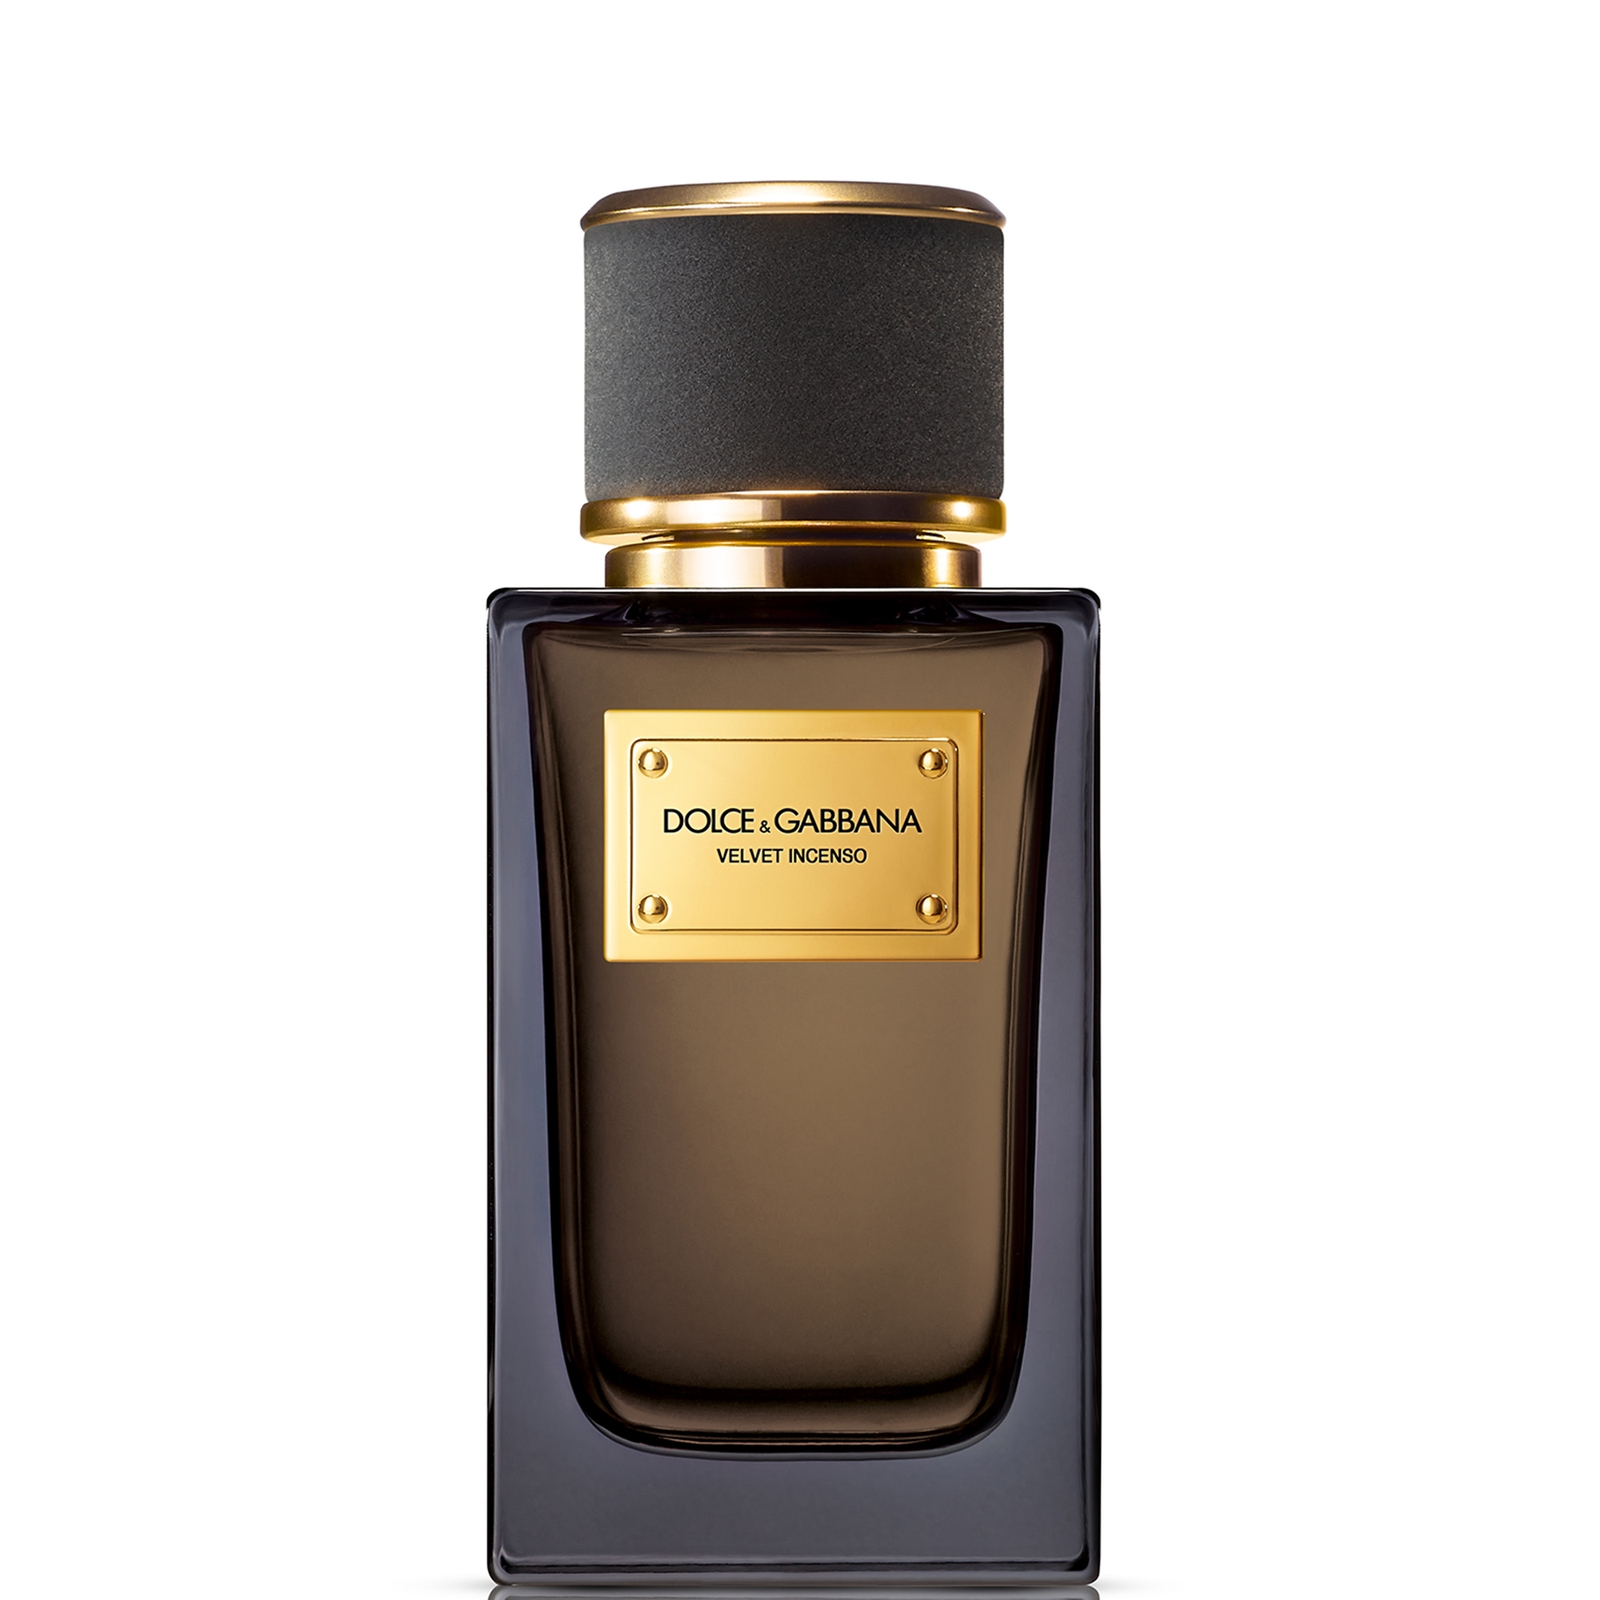 Dolce&Gabbana Velvet Incenso Eau de Parfum 100ml